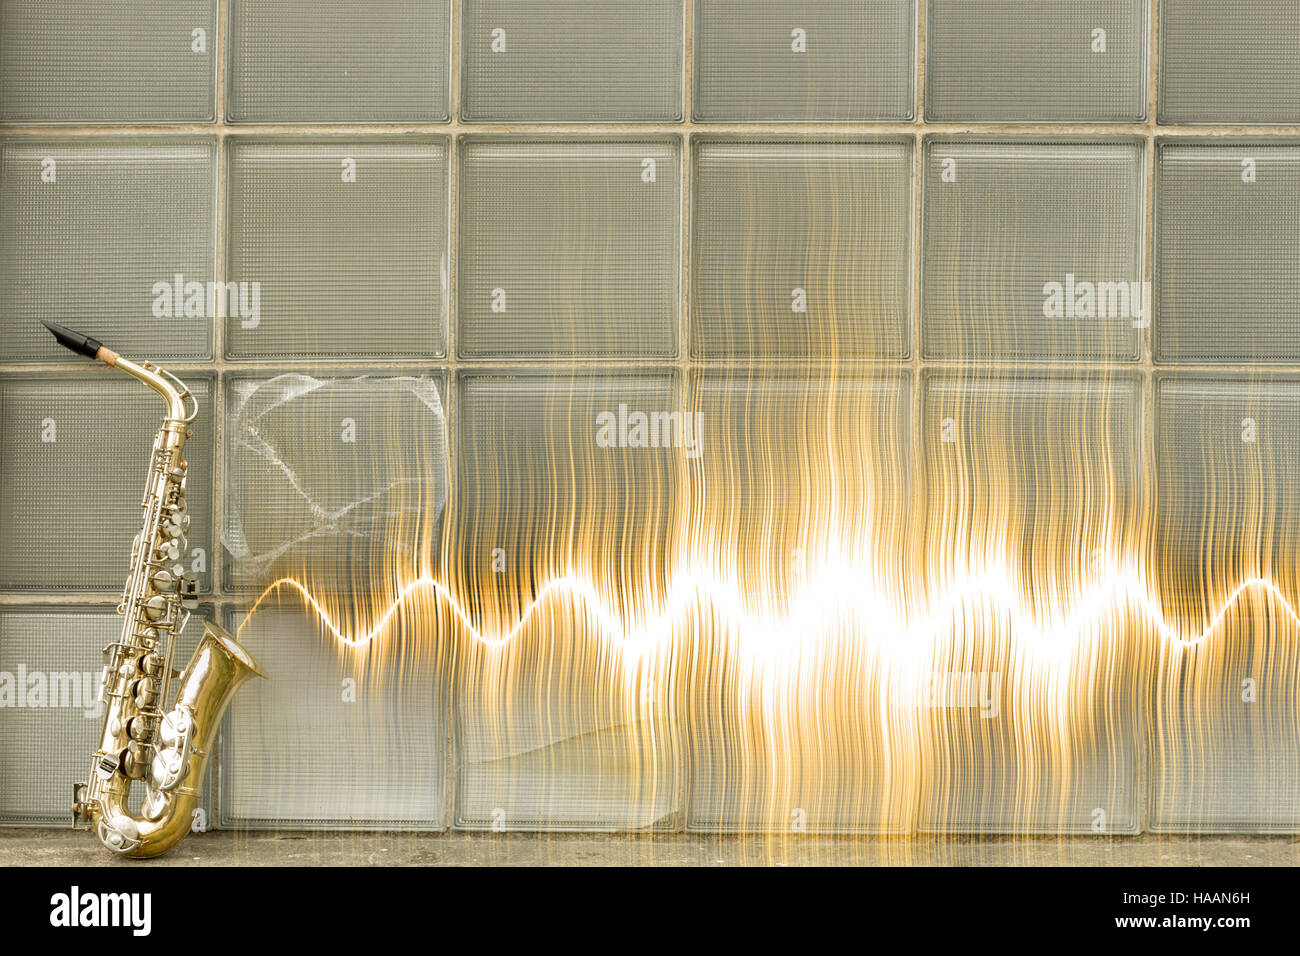 Jazz-Saxophon mit Schallwelle durch Glasfenster Stockfoto